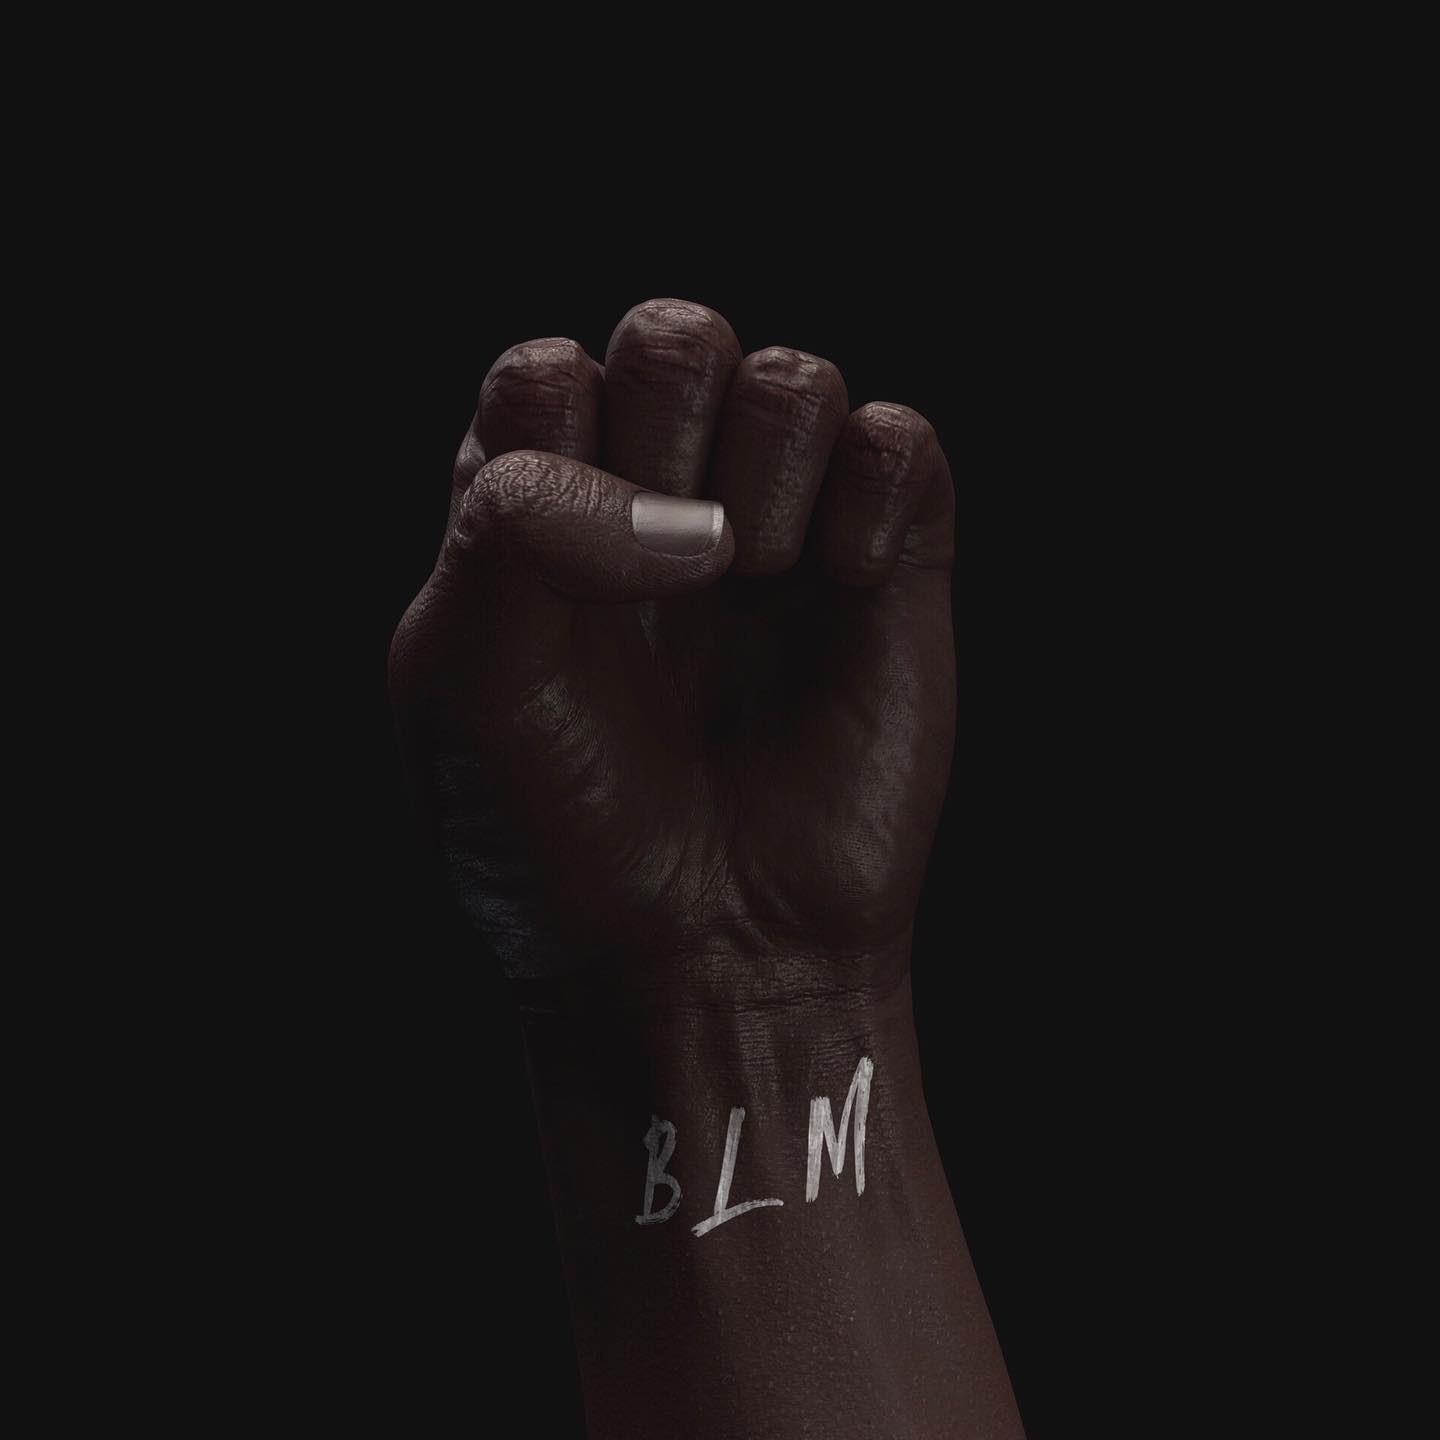 ðŸ–¤
â€”â€”
#blacklivesmatter #blm #racism #strongertogether #artwork #3d #rendering #skin #color